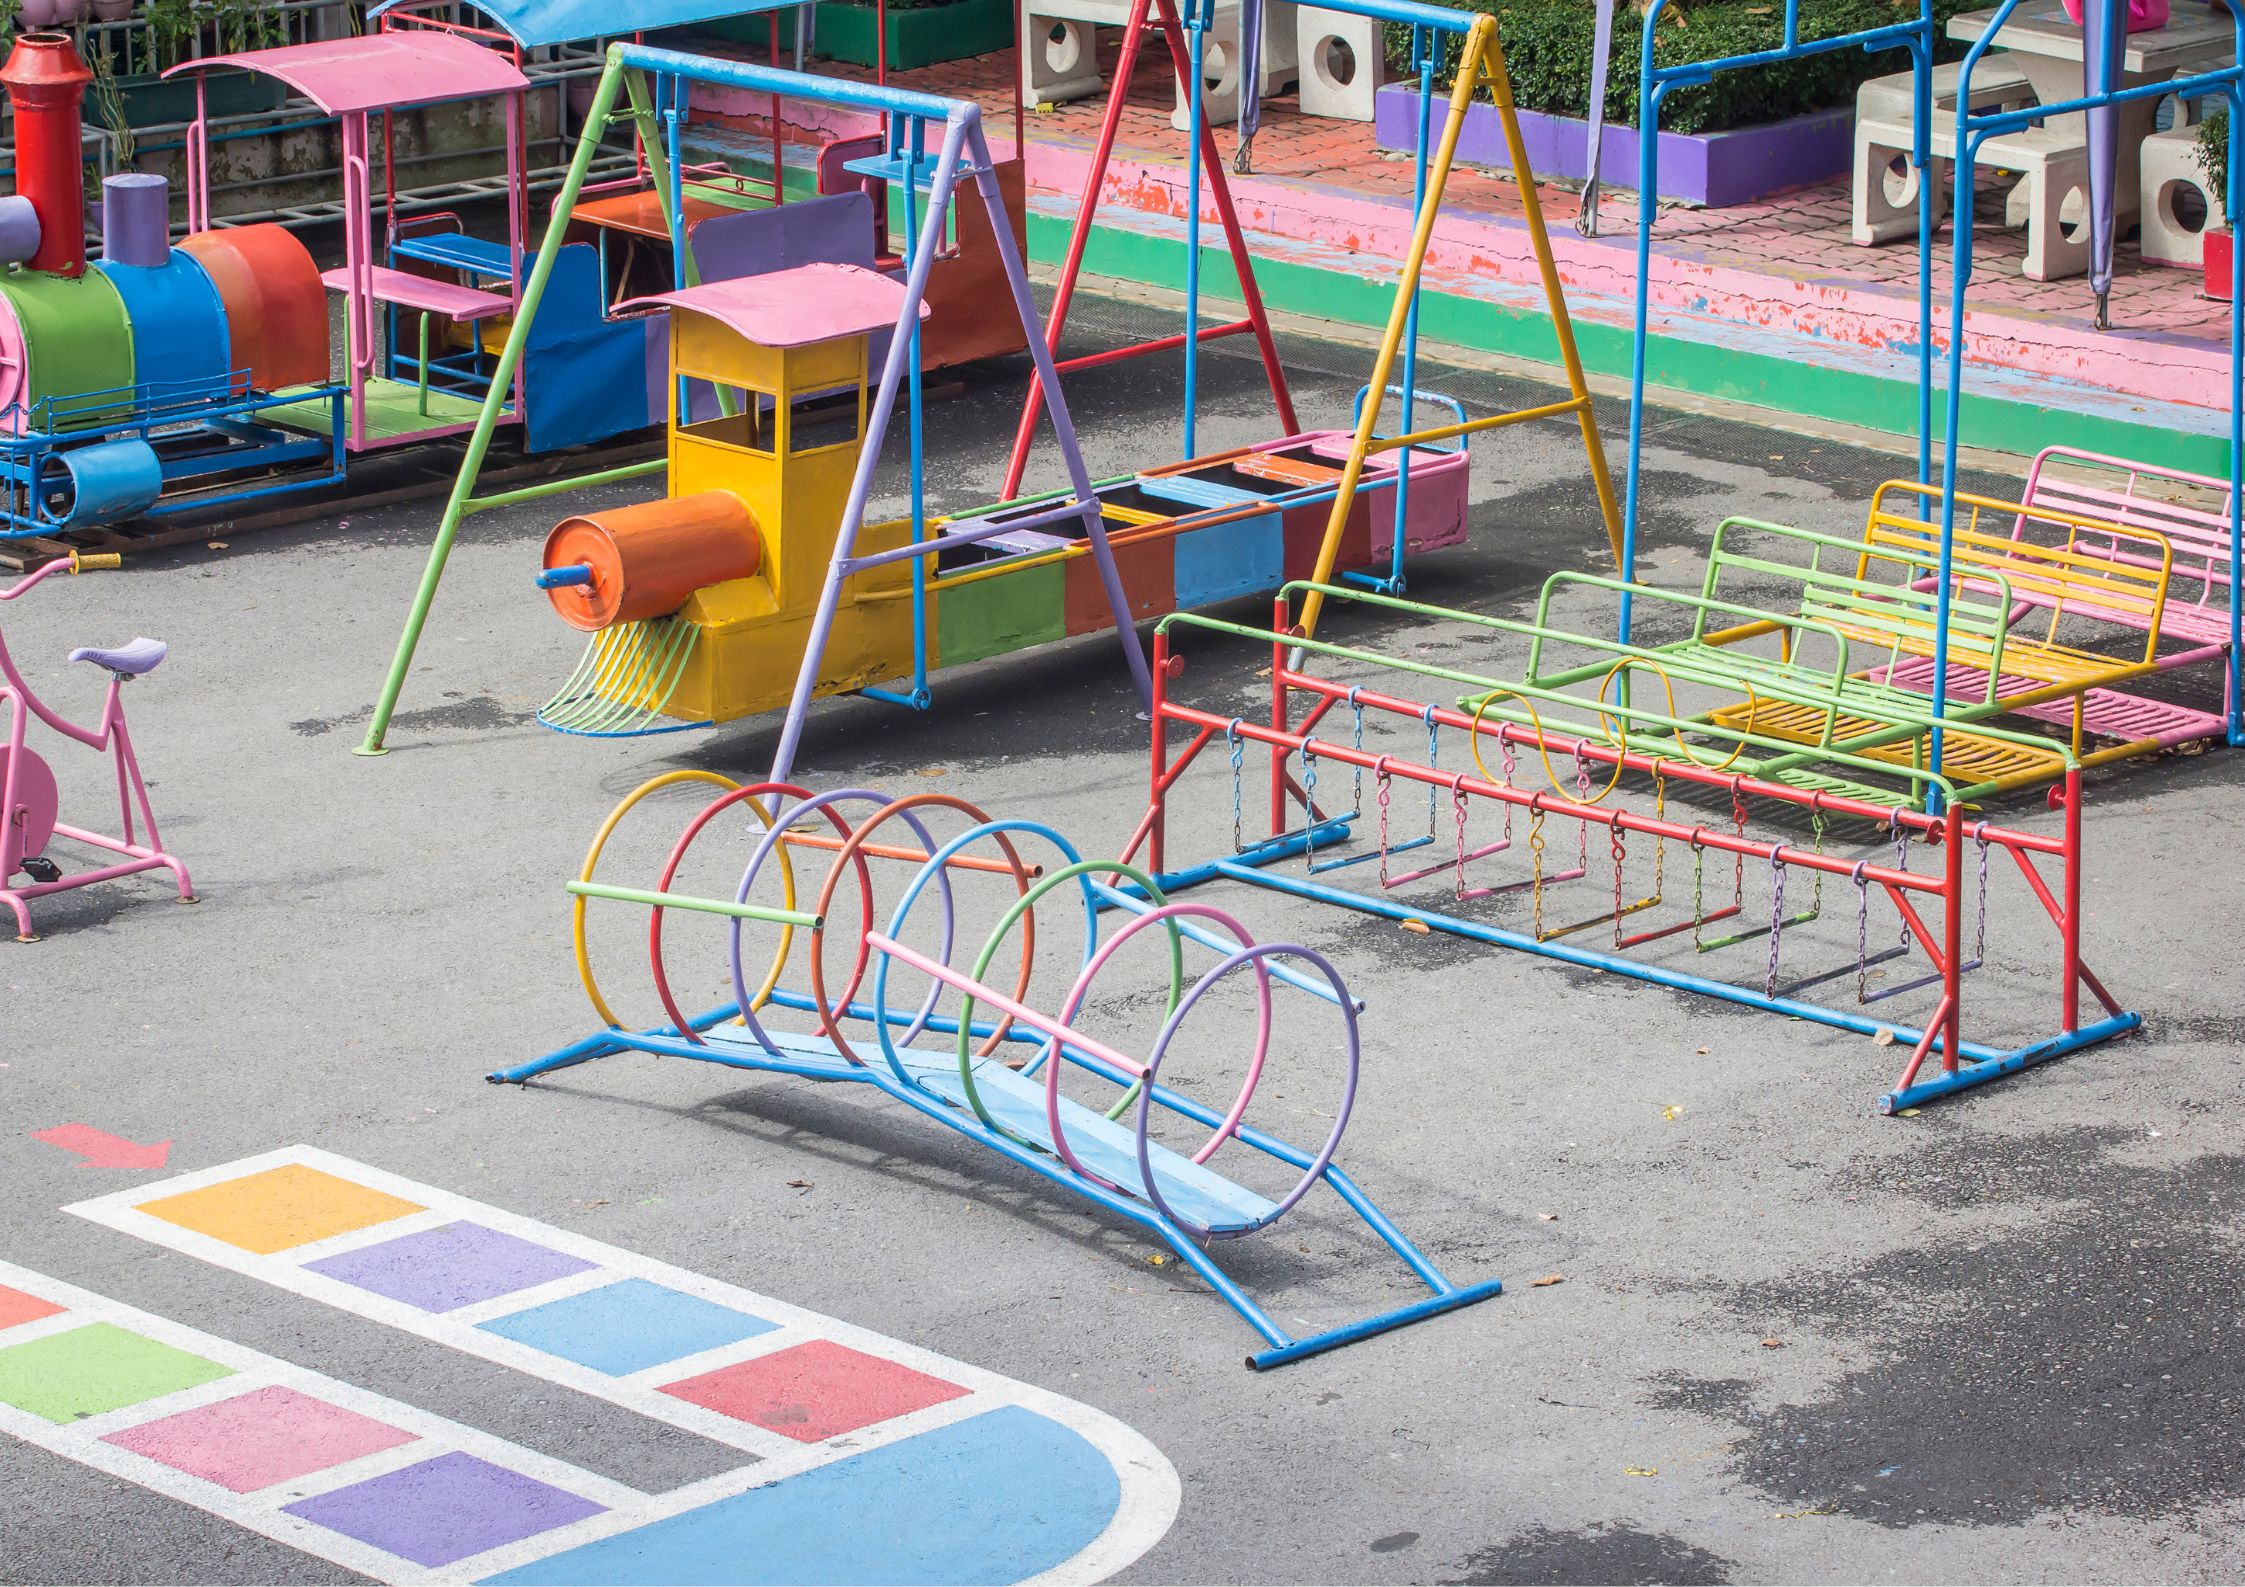 Preschool Play Area